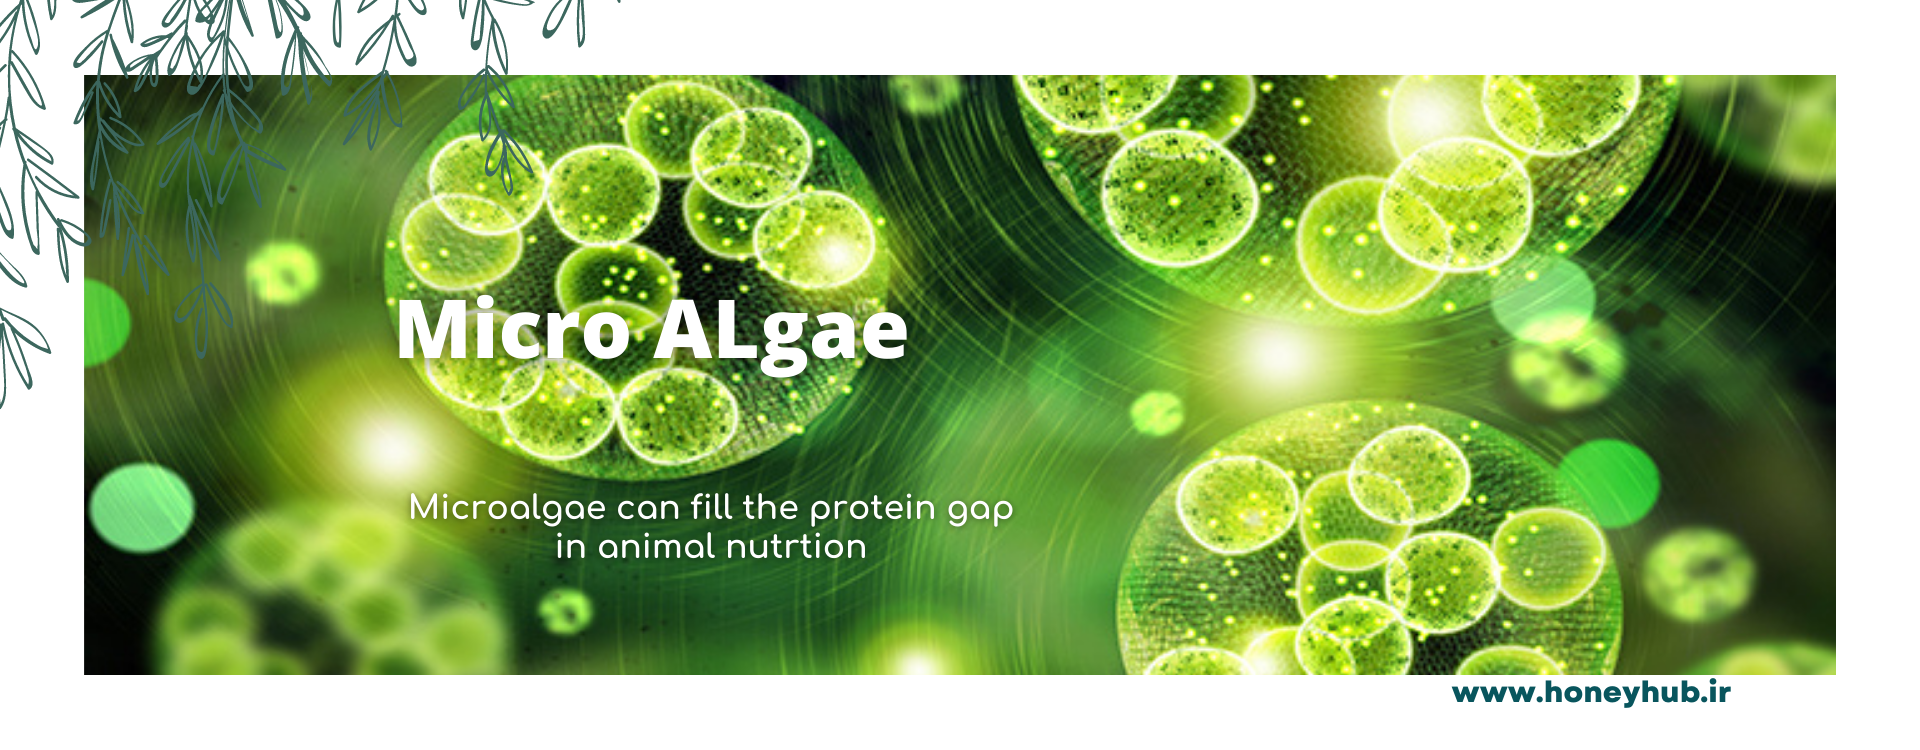 ریزجلبک ها می توانند شکاف پروتئینی خوراک حیوانات را پر کنند